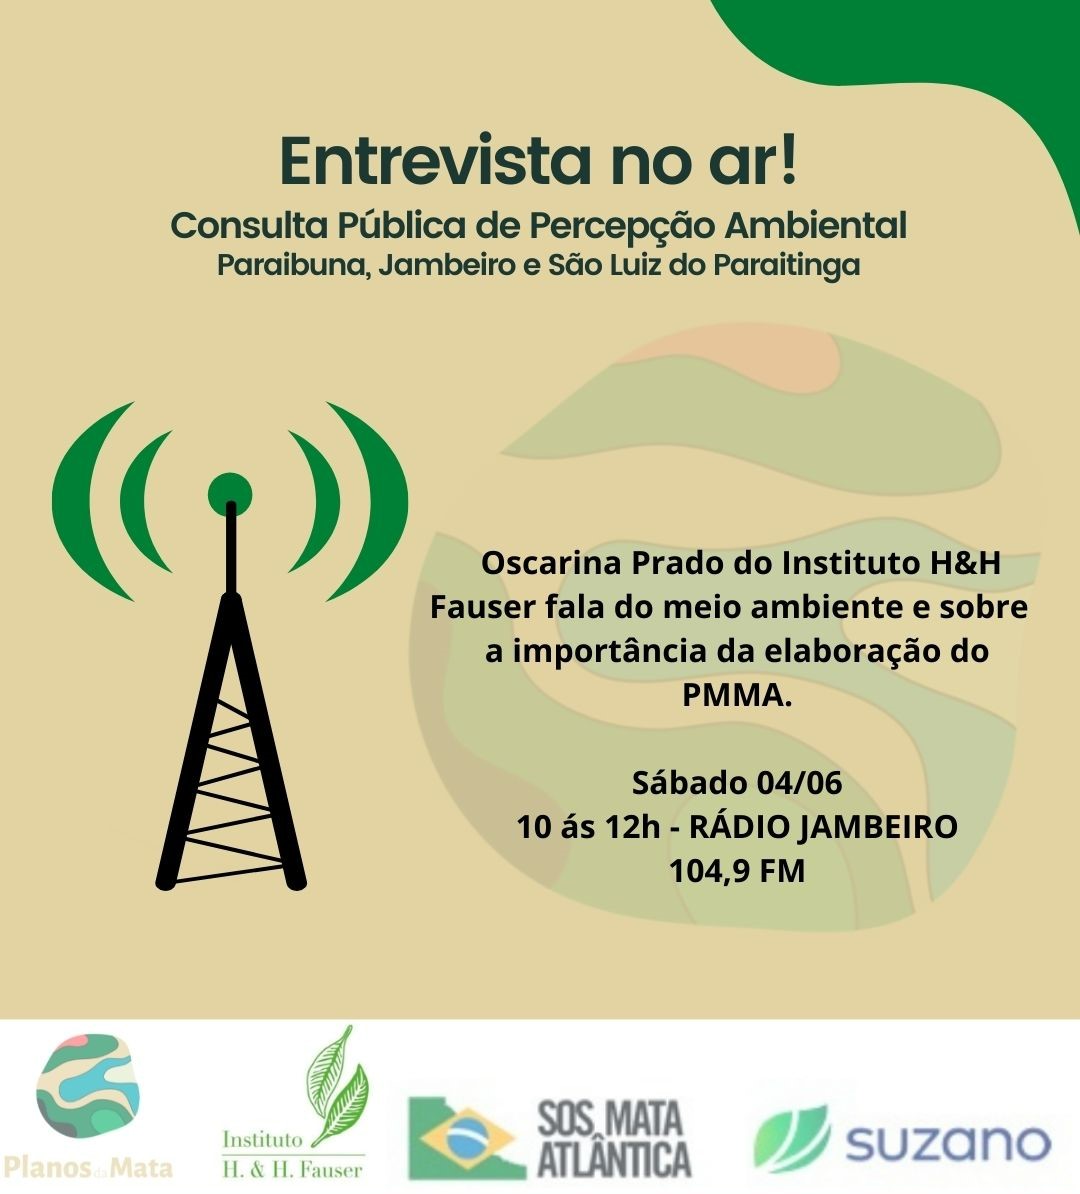 Entrevista no ar! Consulta Pública de Percepção Ambiental em Jambeiro, Paraibuna e São Luiz do Paraitinga